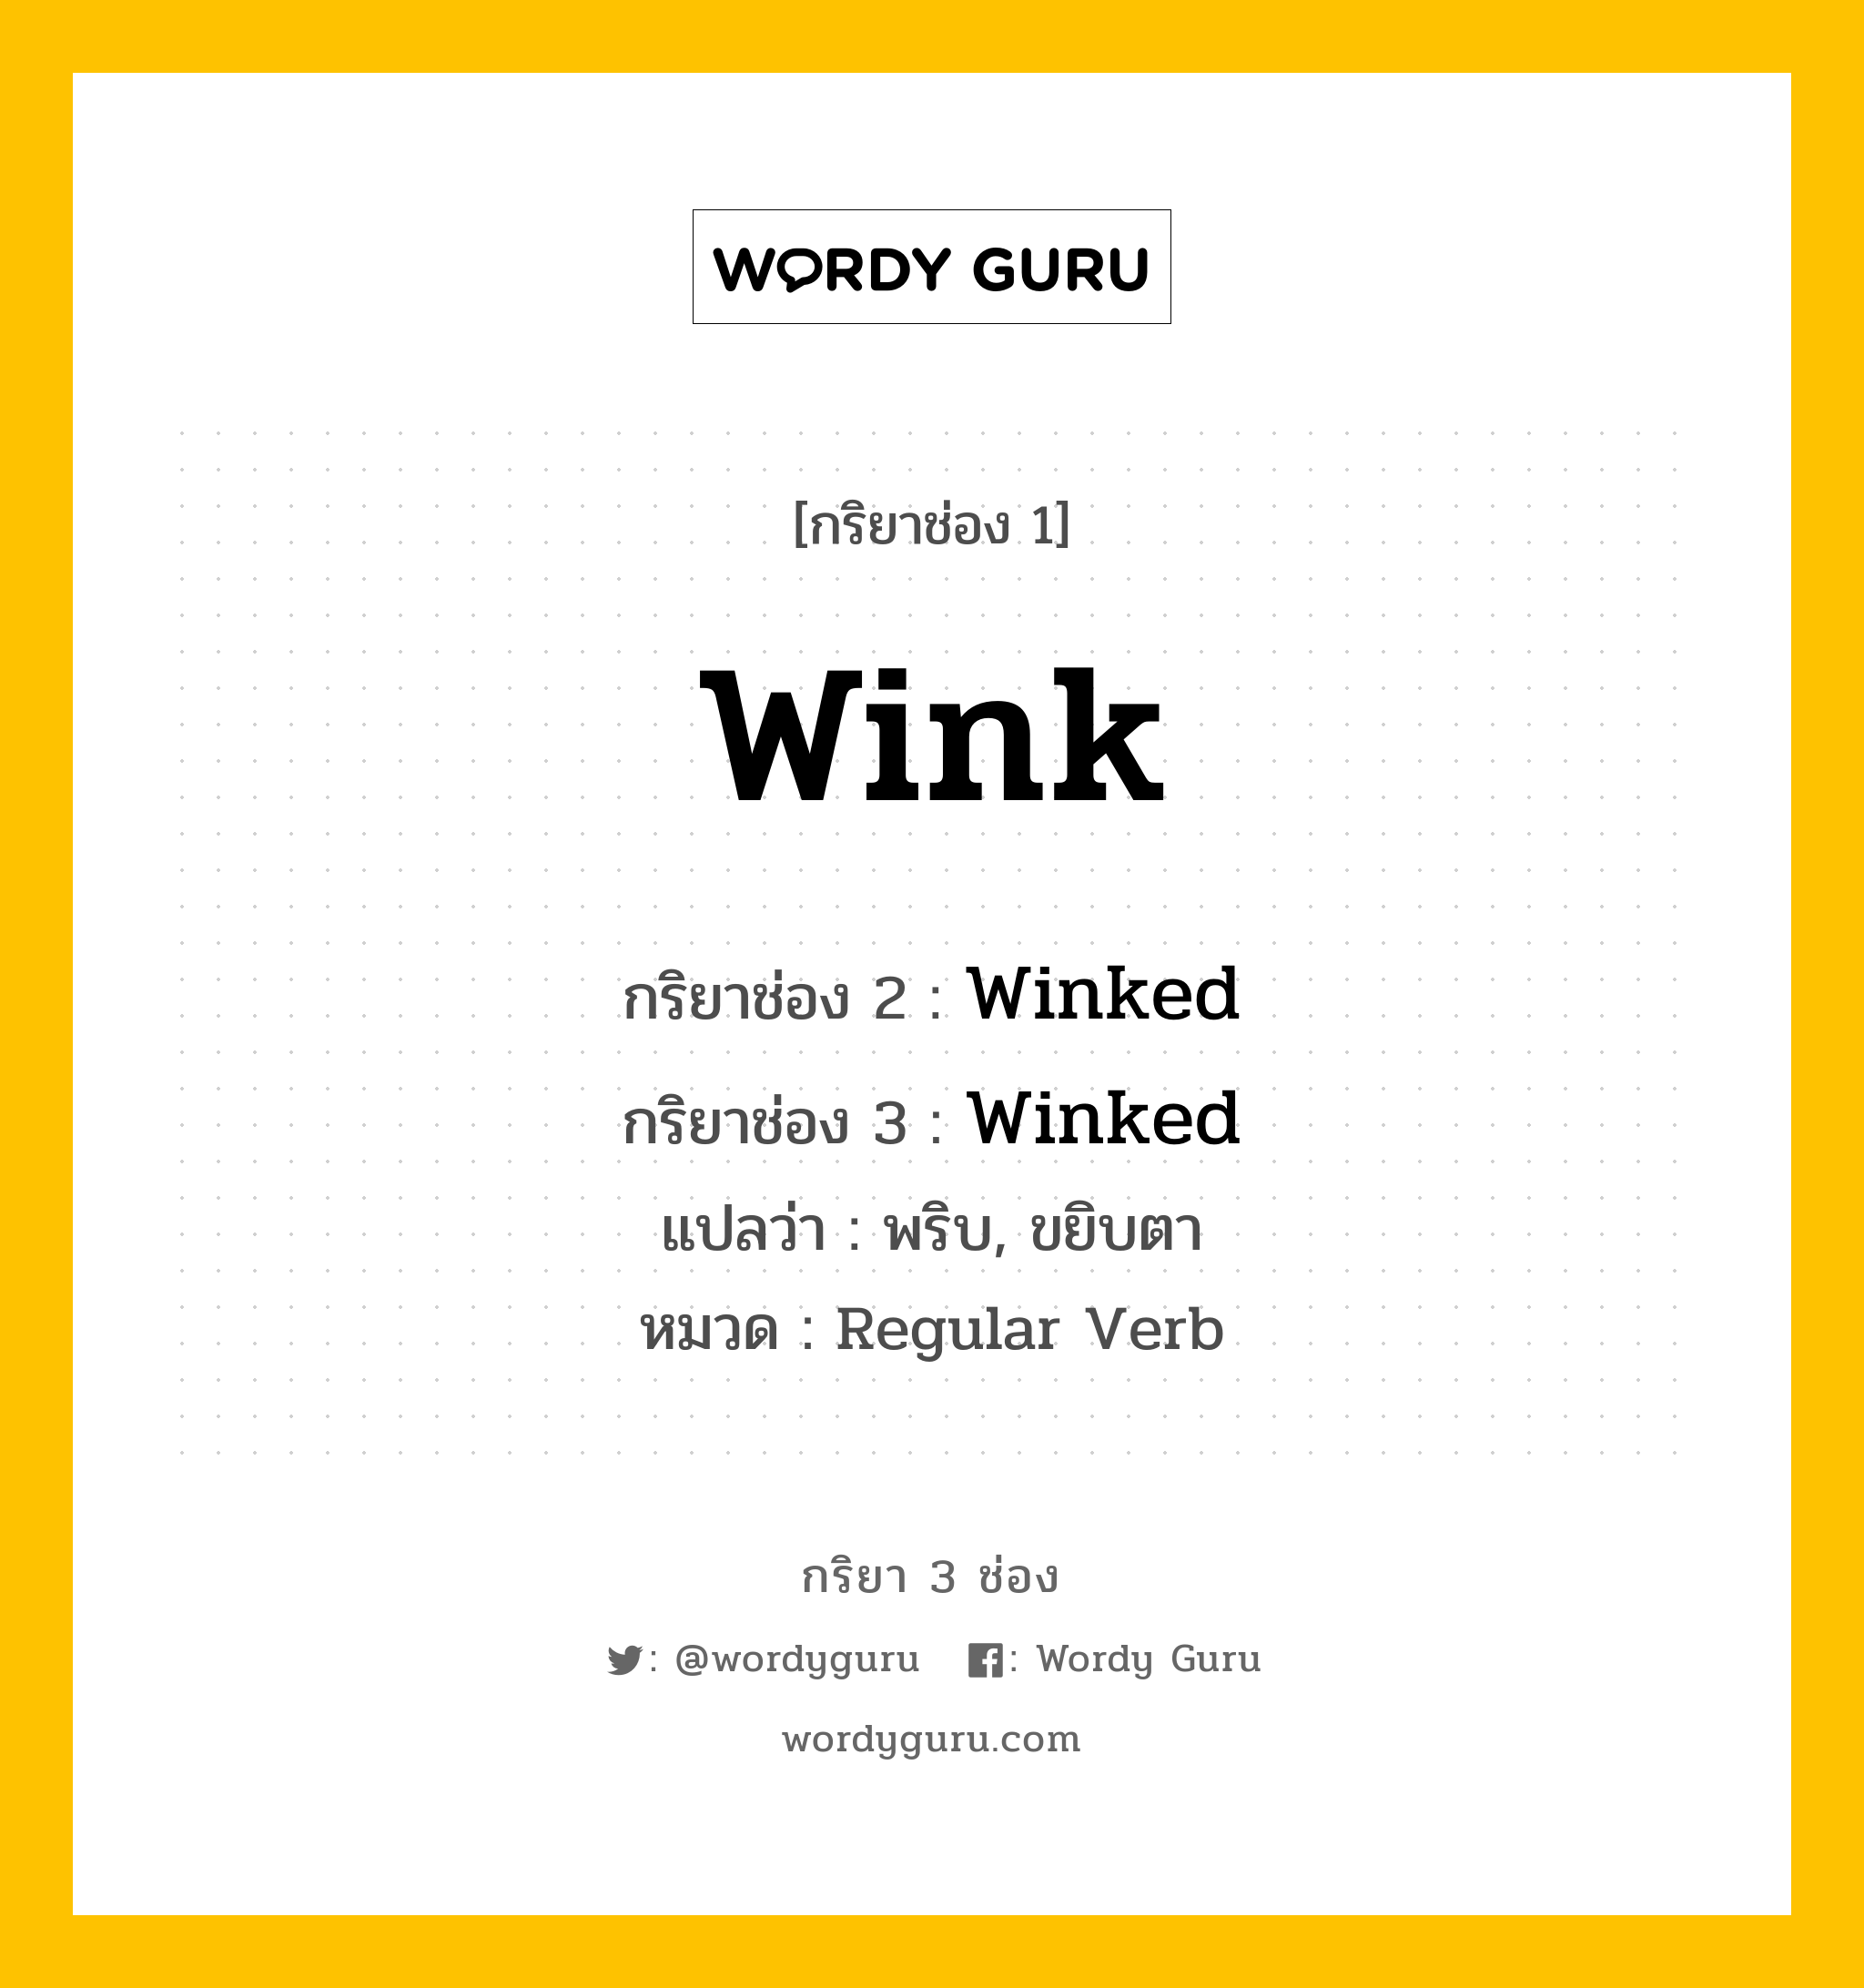 กริยา 3 ช่อง ของ Wink คืออะไร? มาดูคำอ่าน คำแปลกันเลย, กริยาช่อง 1 Wink กริยาช่อง 2 Winked กริยาช่อง 3 Winked แปลว่า พริบ, ขยิบตา หมวด Regular Verb หมวด Regular Verb